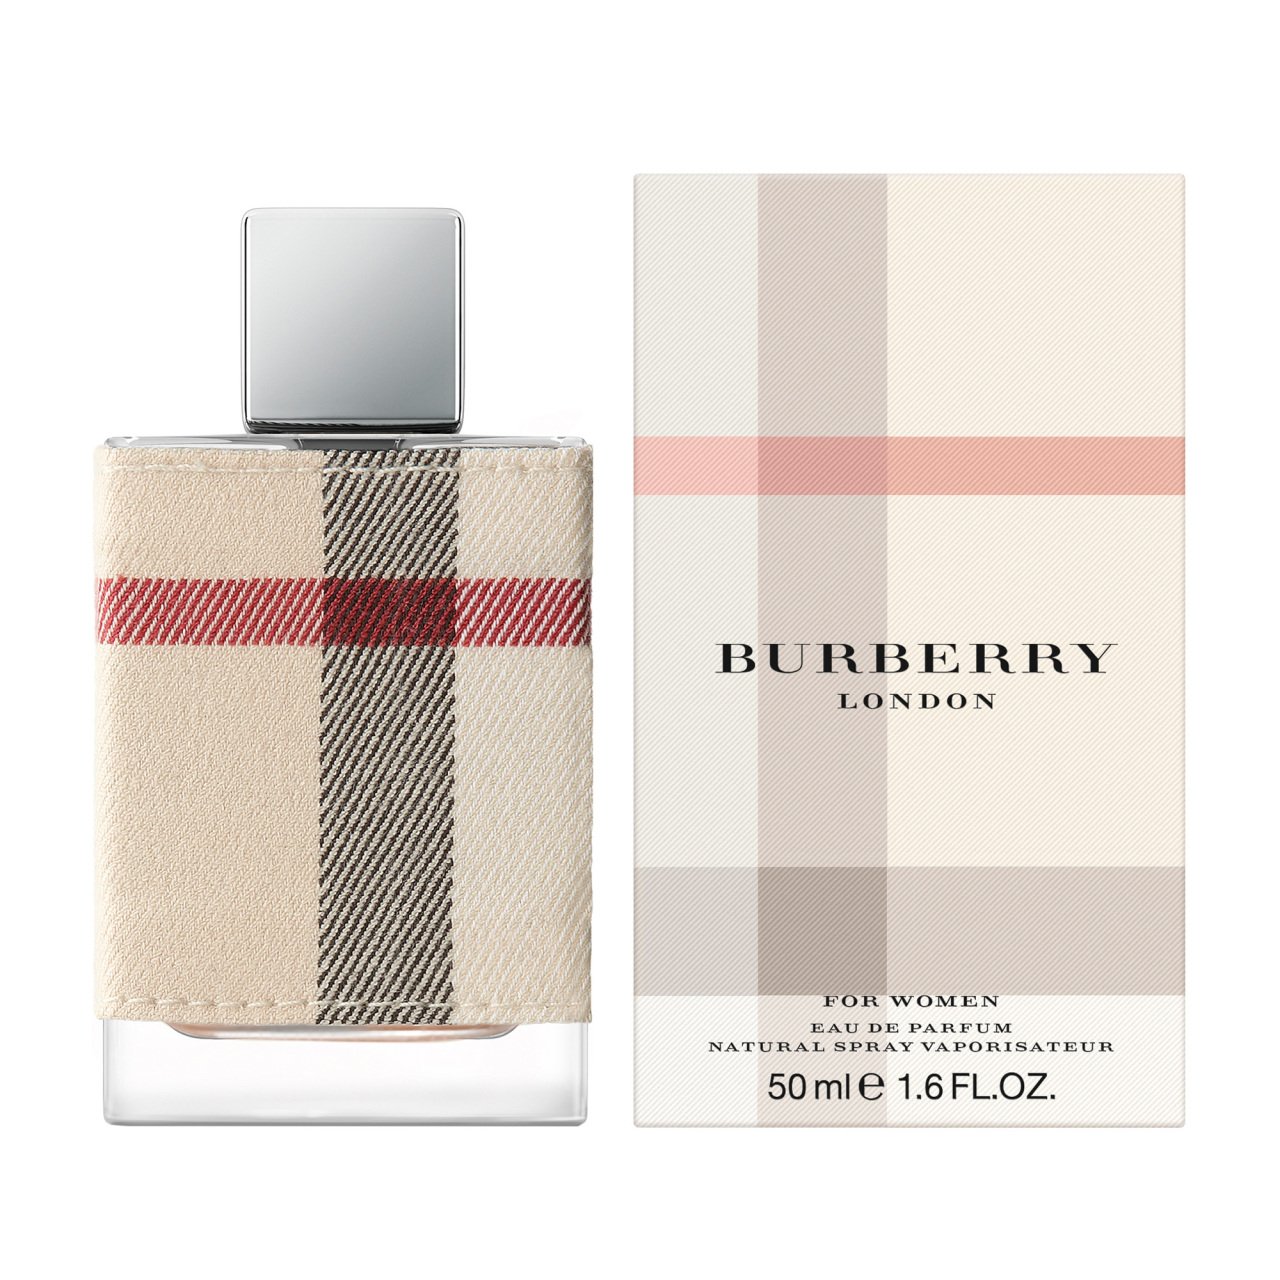 Burberry London for women Eau de Parfum 100 ml